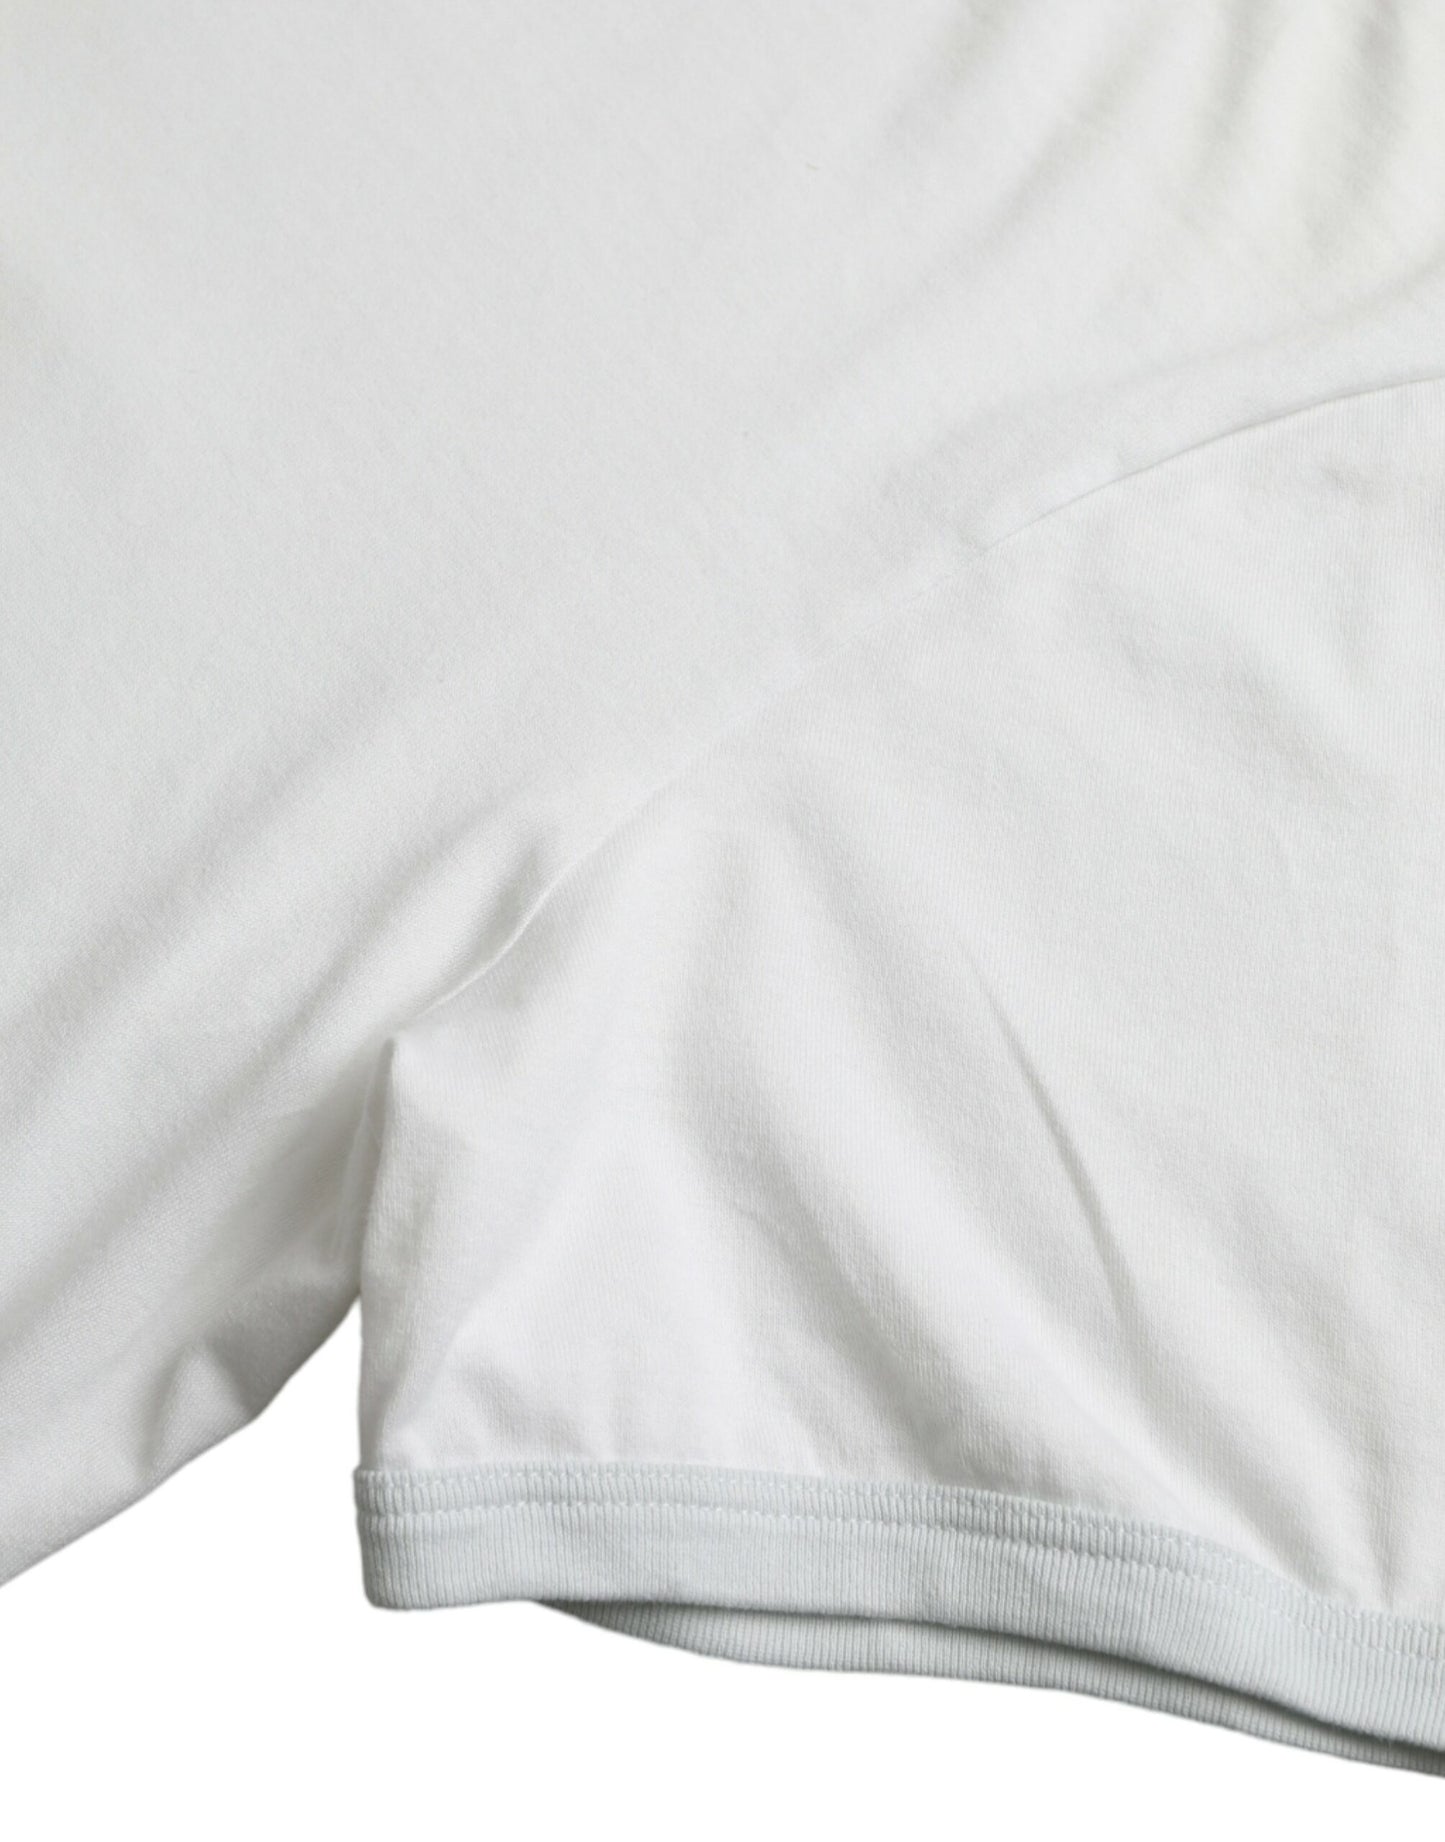 Dolce & Gabbana White Cotton Round Neck Short Sleeve T-shirt